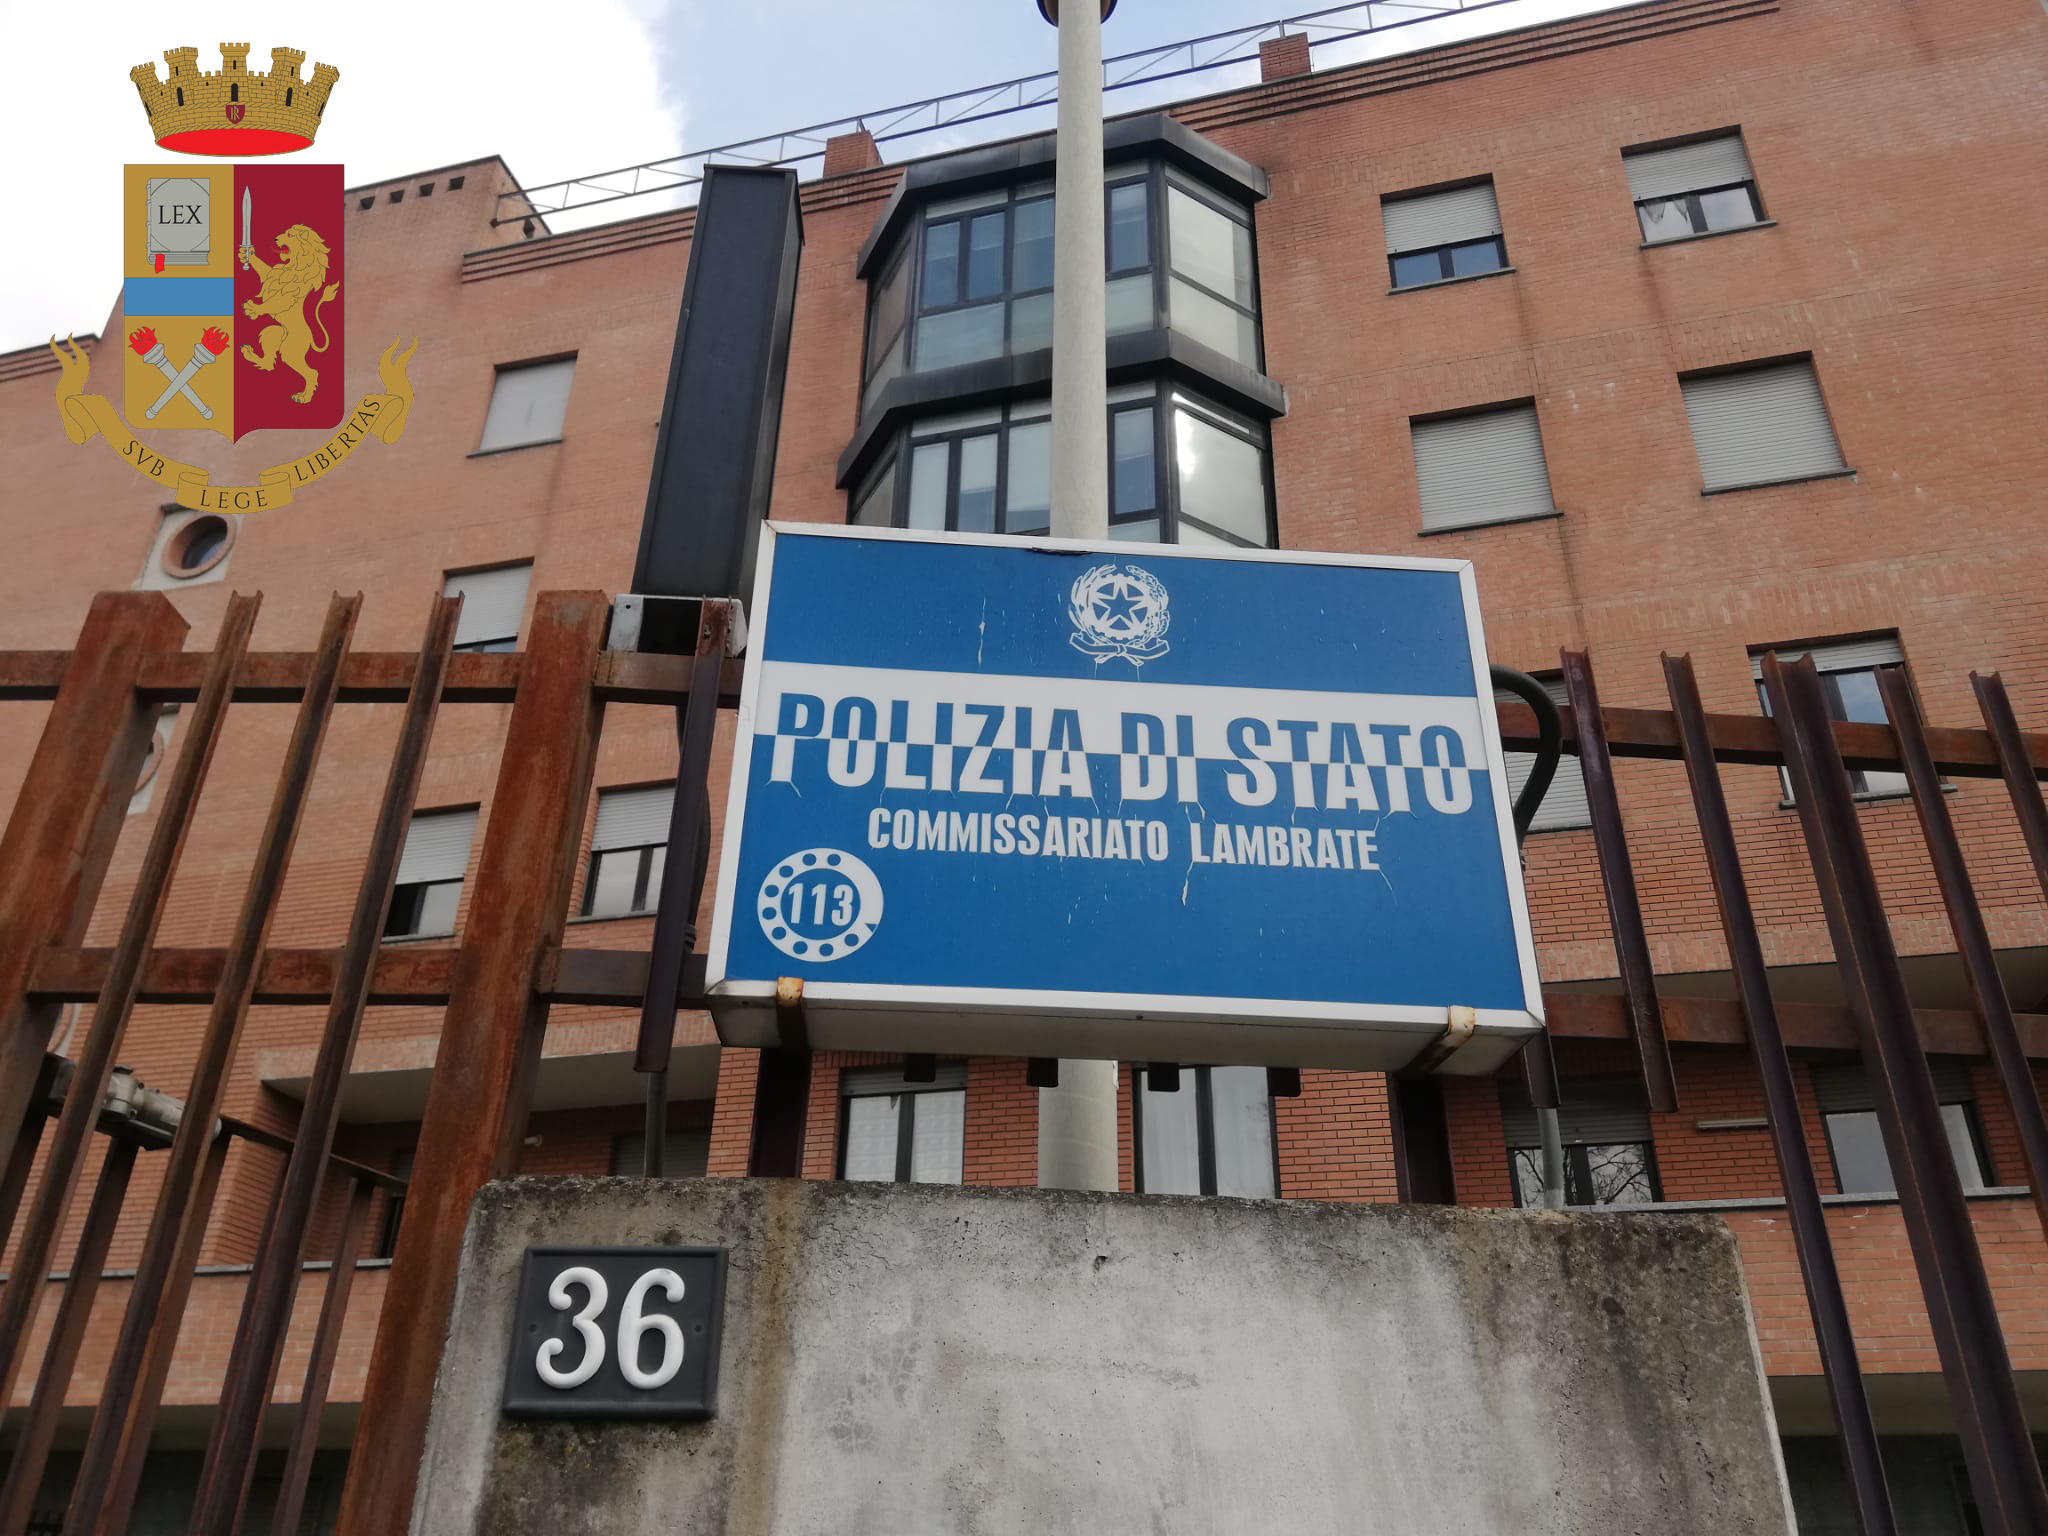 Milano, 33kg di sigarette da contrabbando in un trolley: la Polizia di Stato arresta un uomo